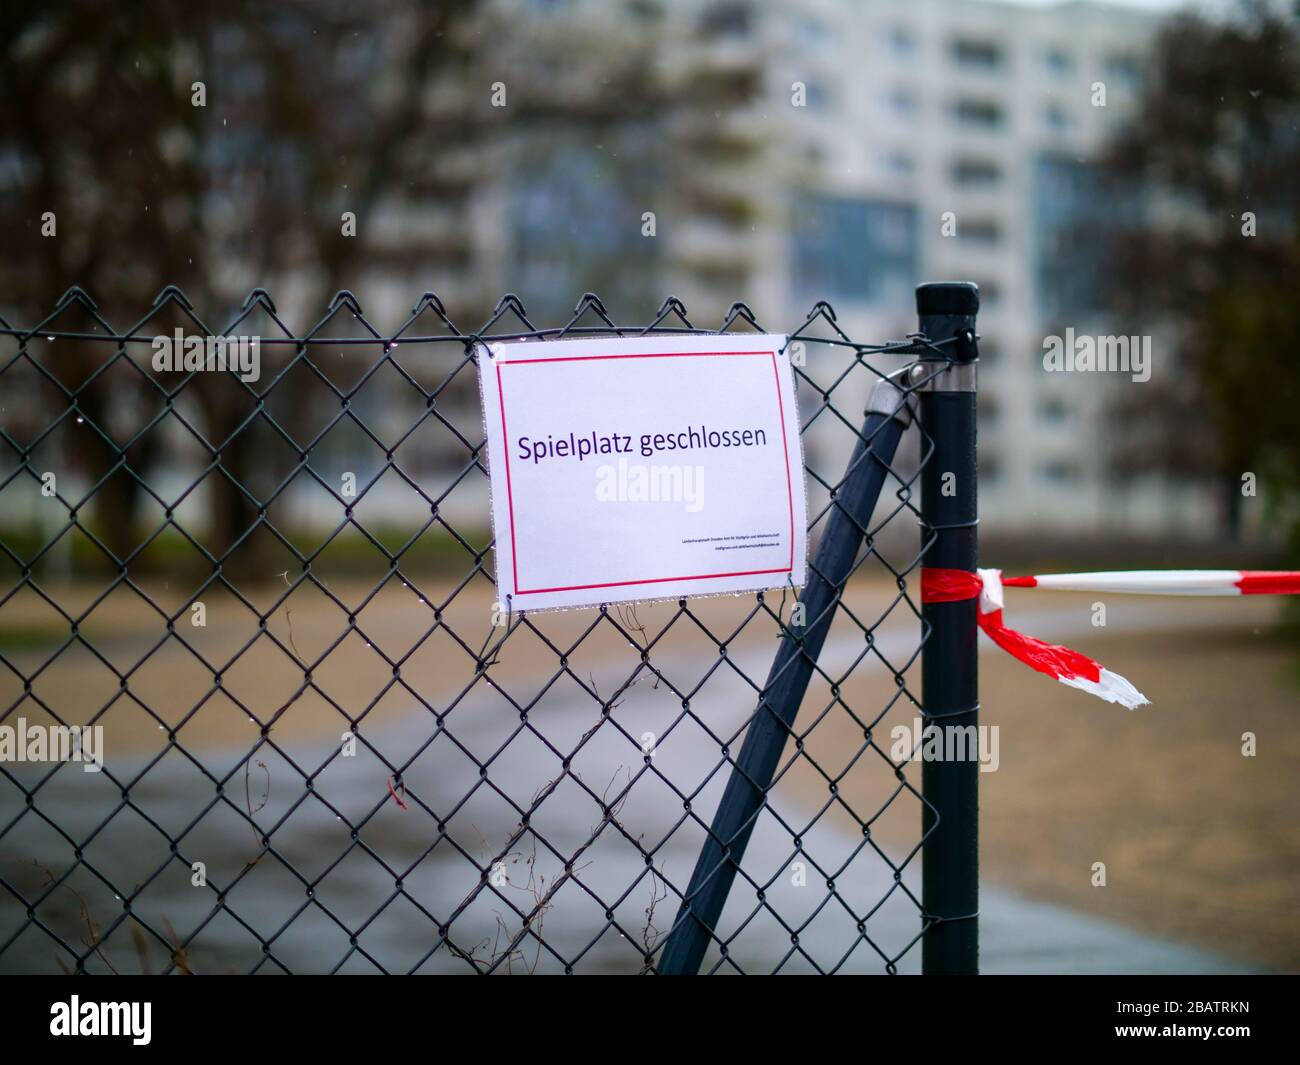 Spielplatz geschlossen Wegen Coronavirus Lockdown Ausgangssperre Foto Stock